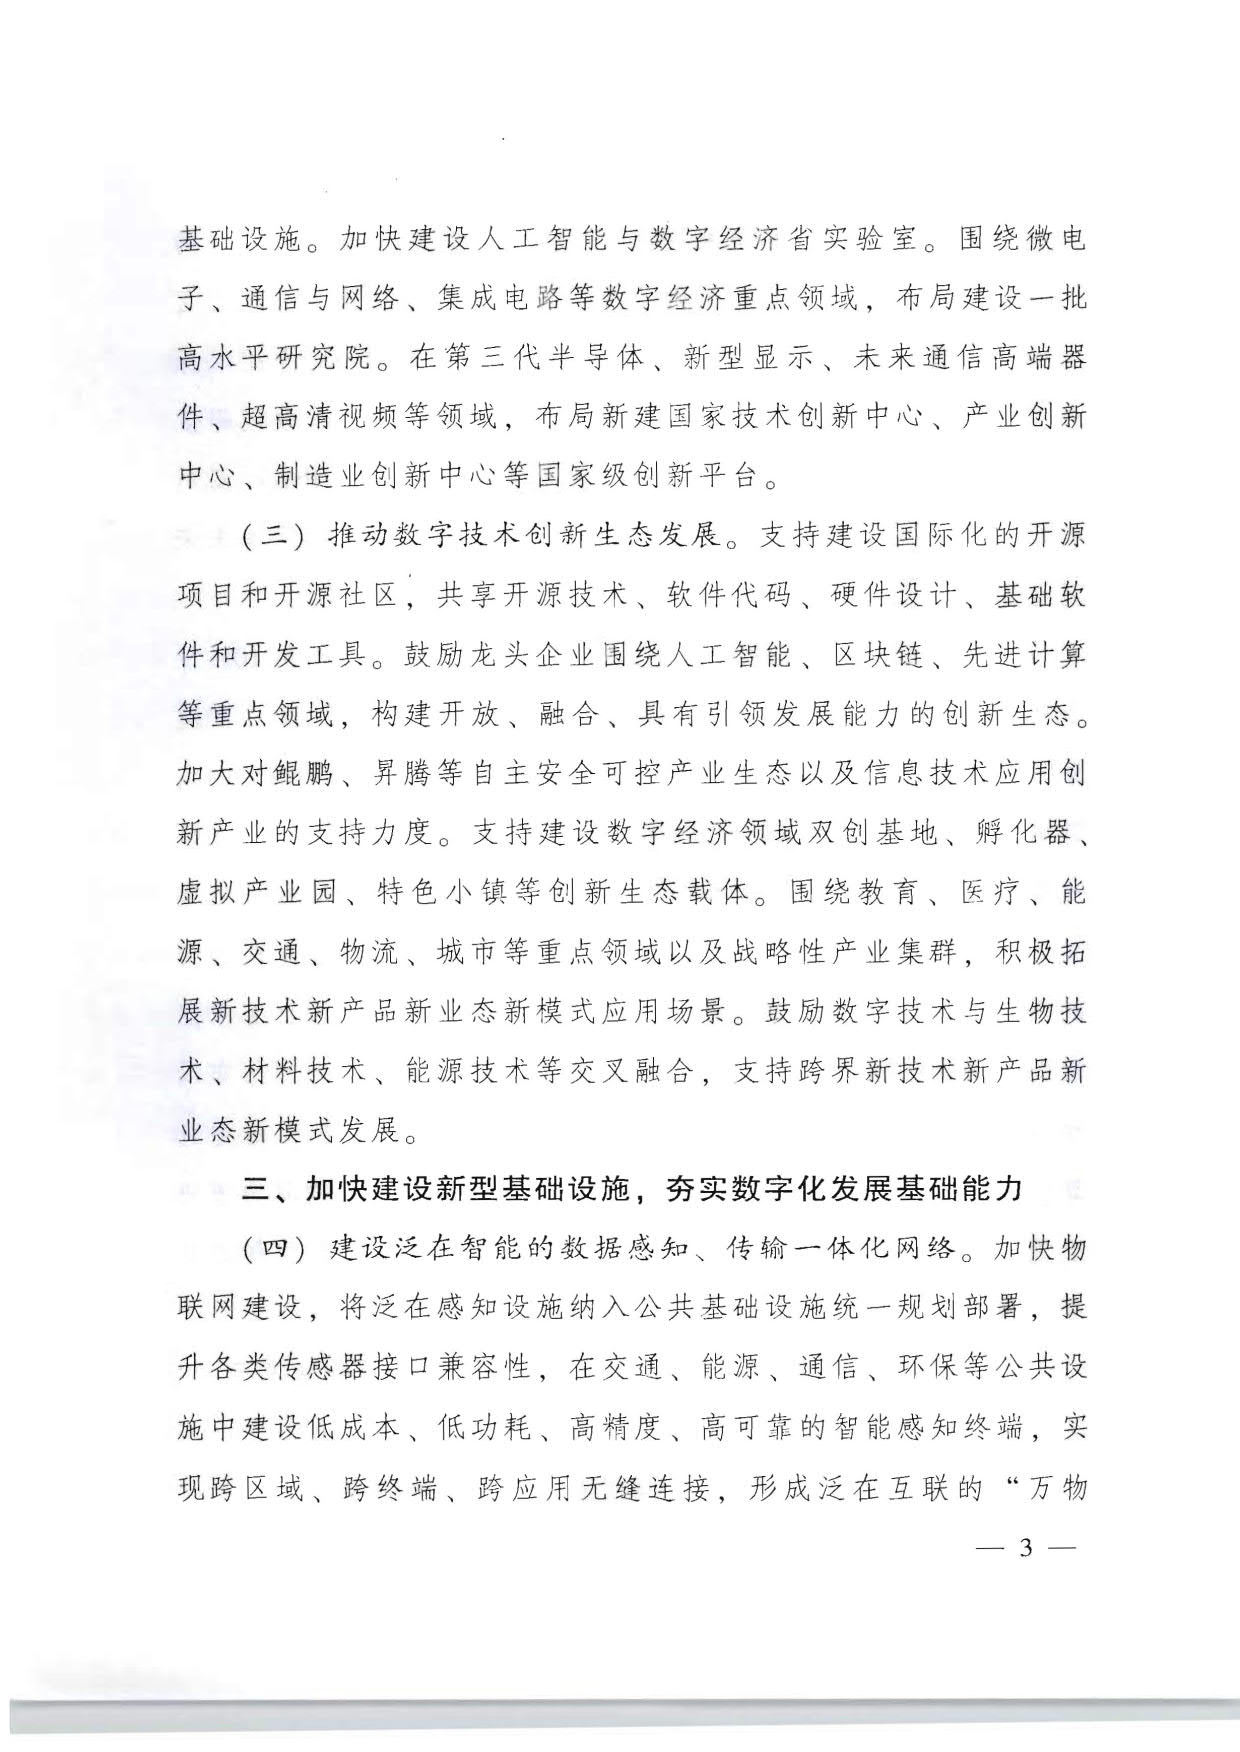 广东省人民政府关于加快数字化发展的意见_03.jpg